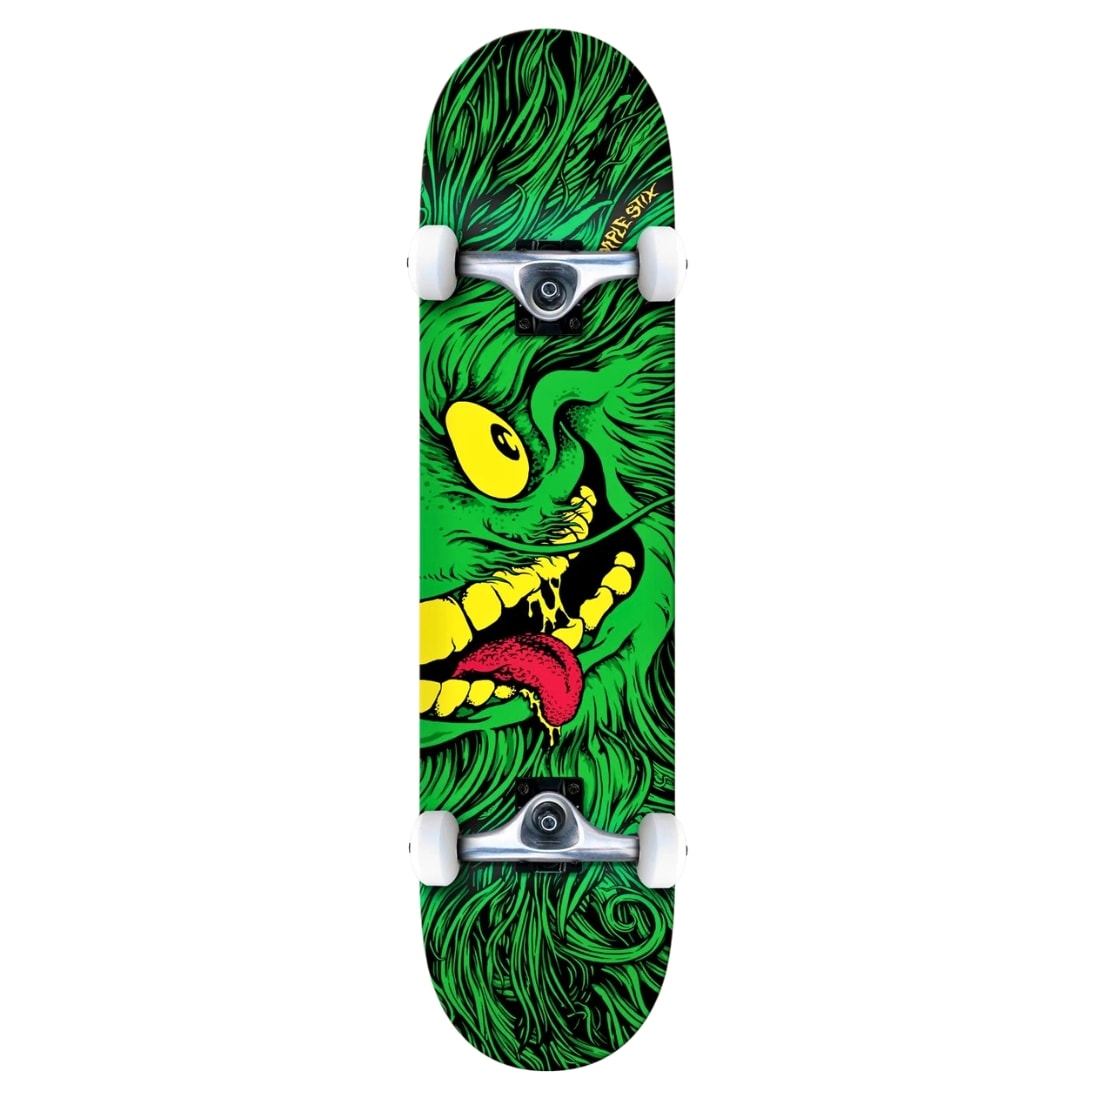 Anti Hero 7.75" Grimplestix Full Face Complete Skateboard - Green - Complete Skateboard by Anti Hero 7.75 inch